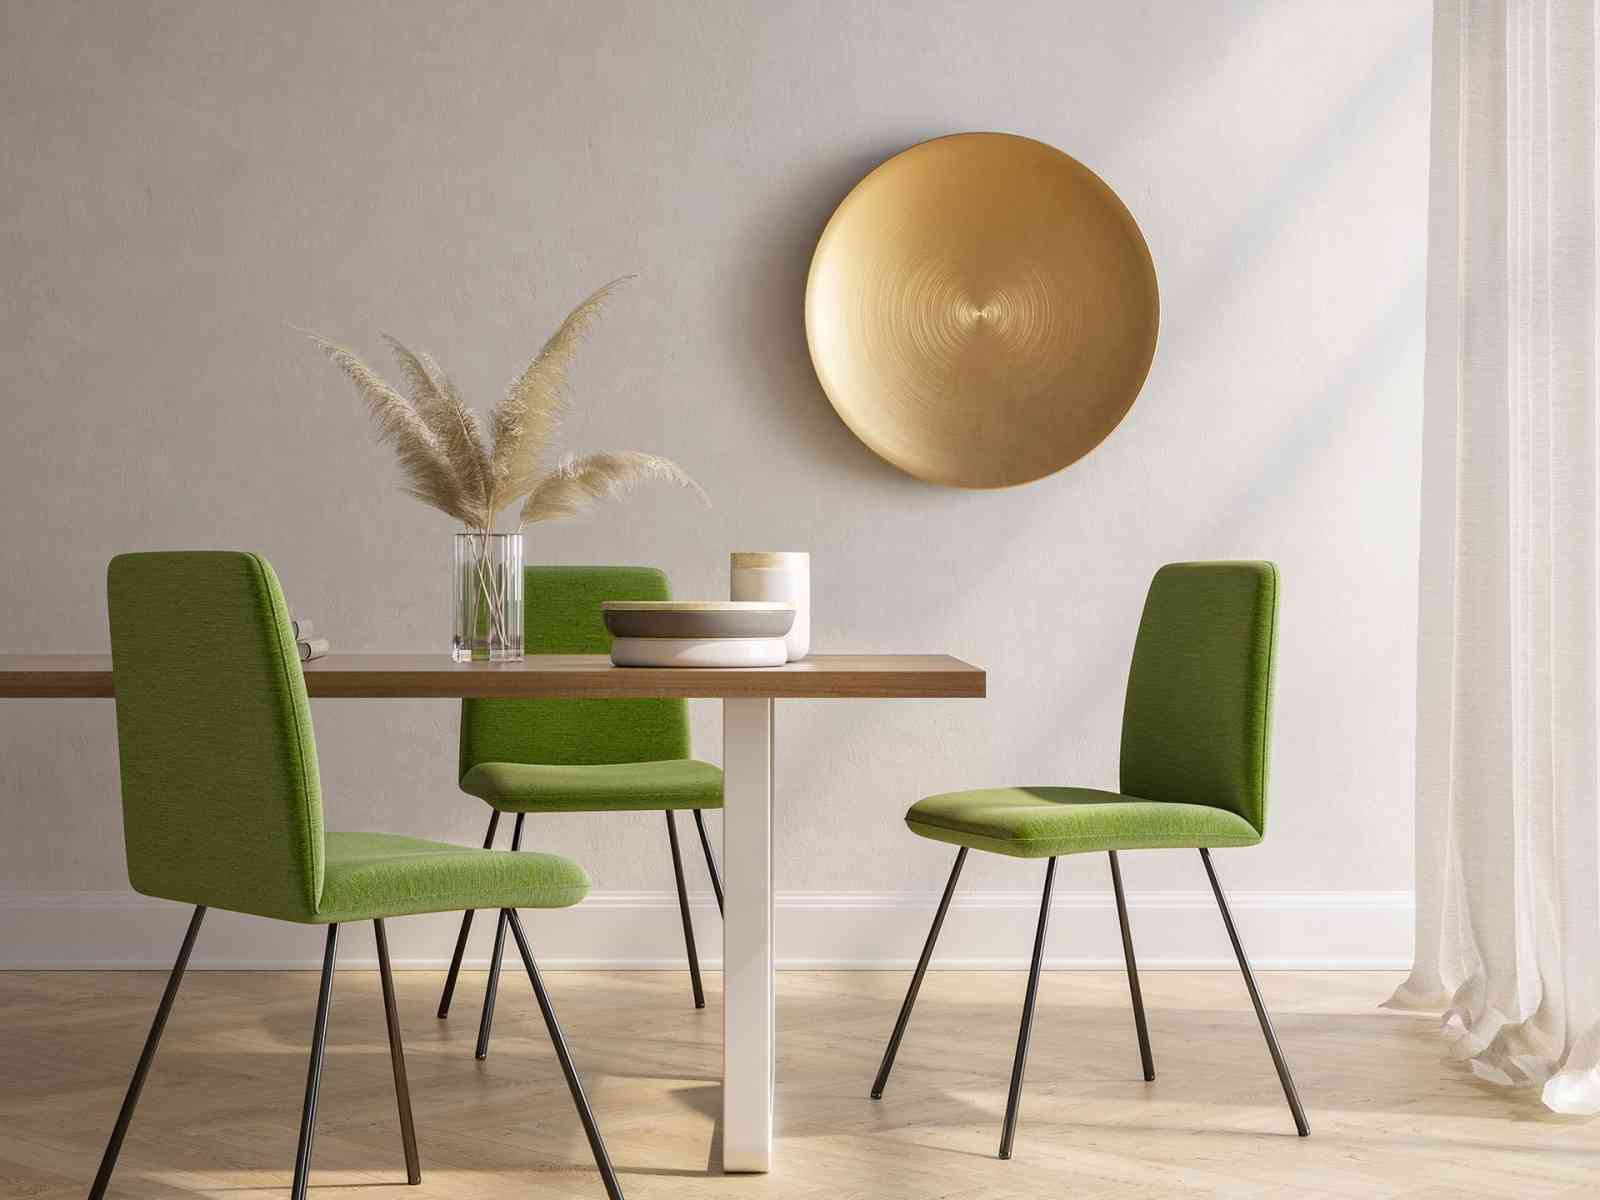 Immagine articolo: Le sedie per una cucina pratica e di design